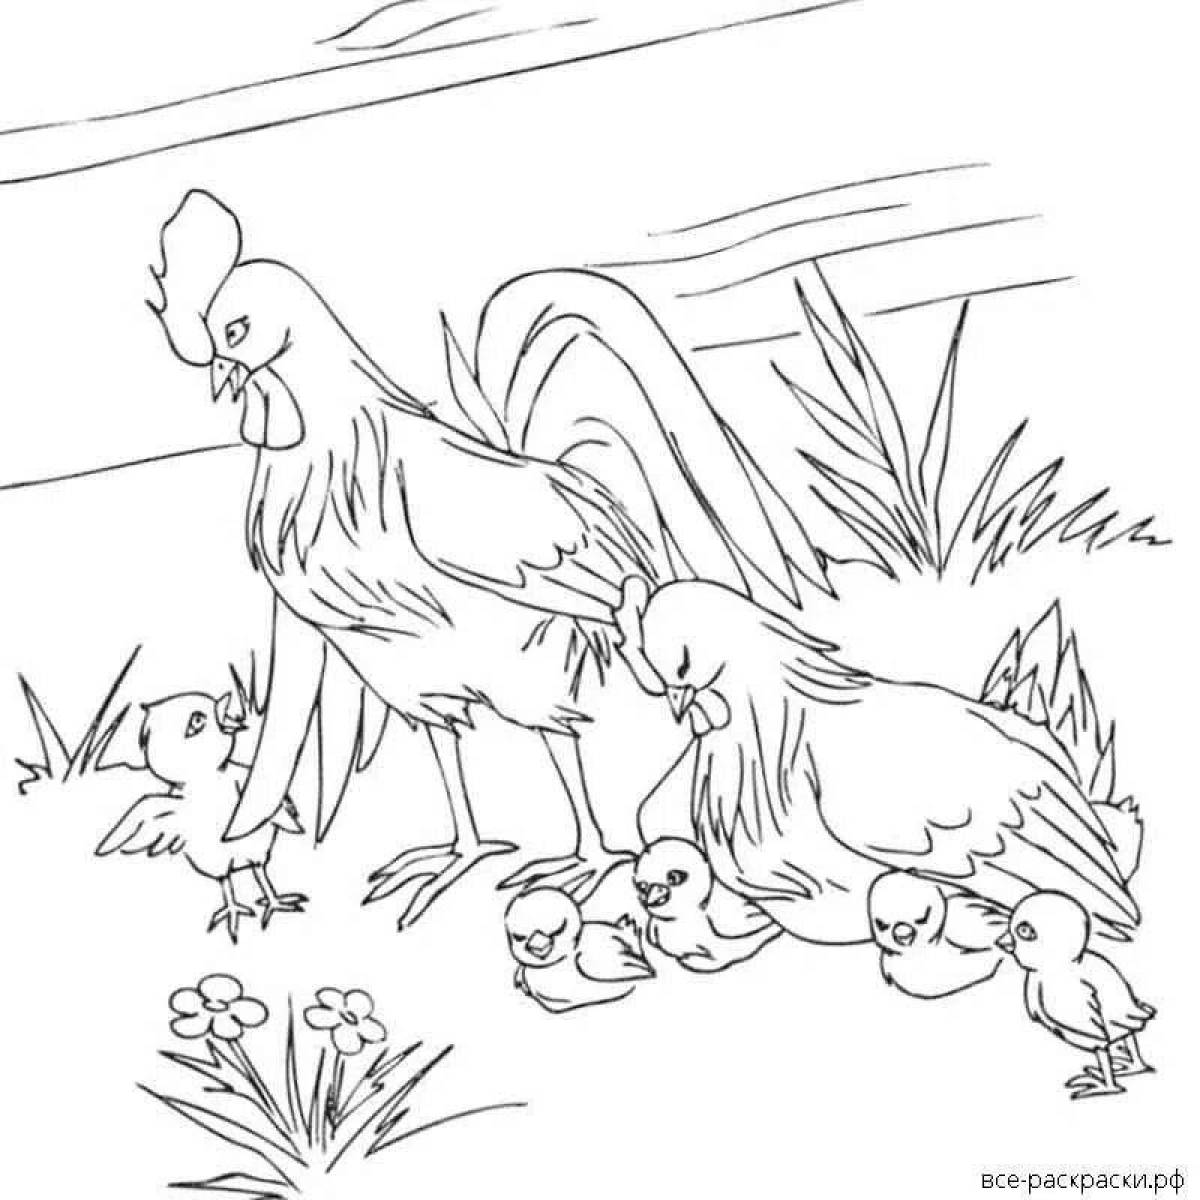 Петух и курица #5